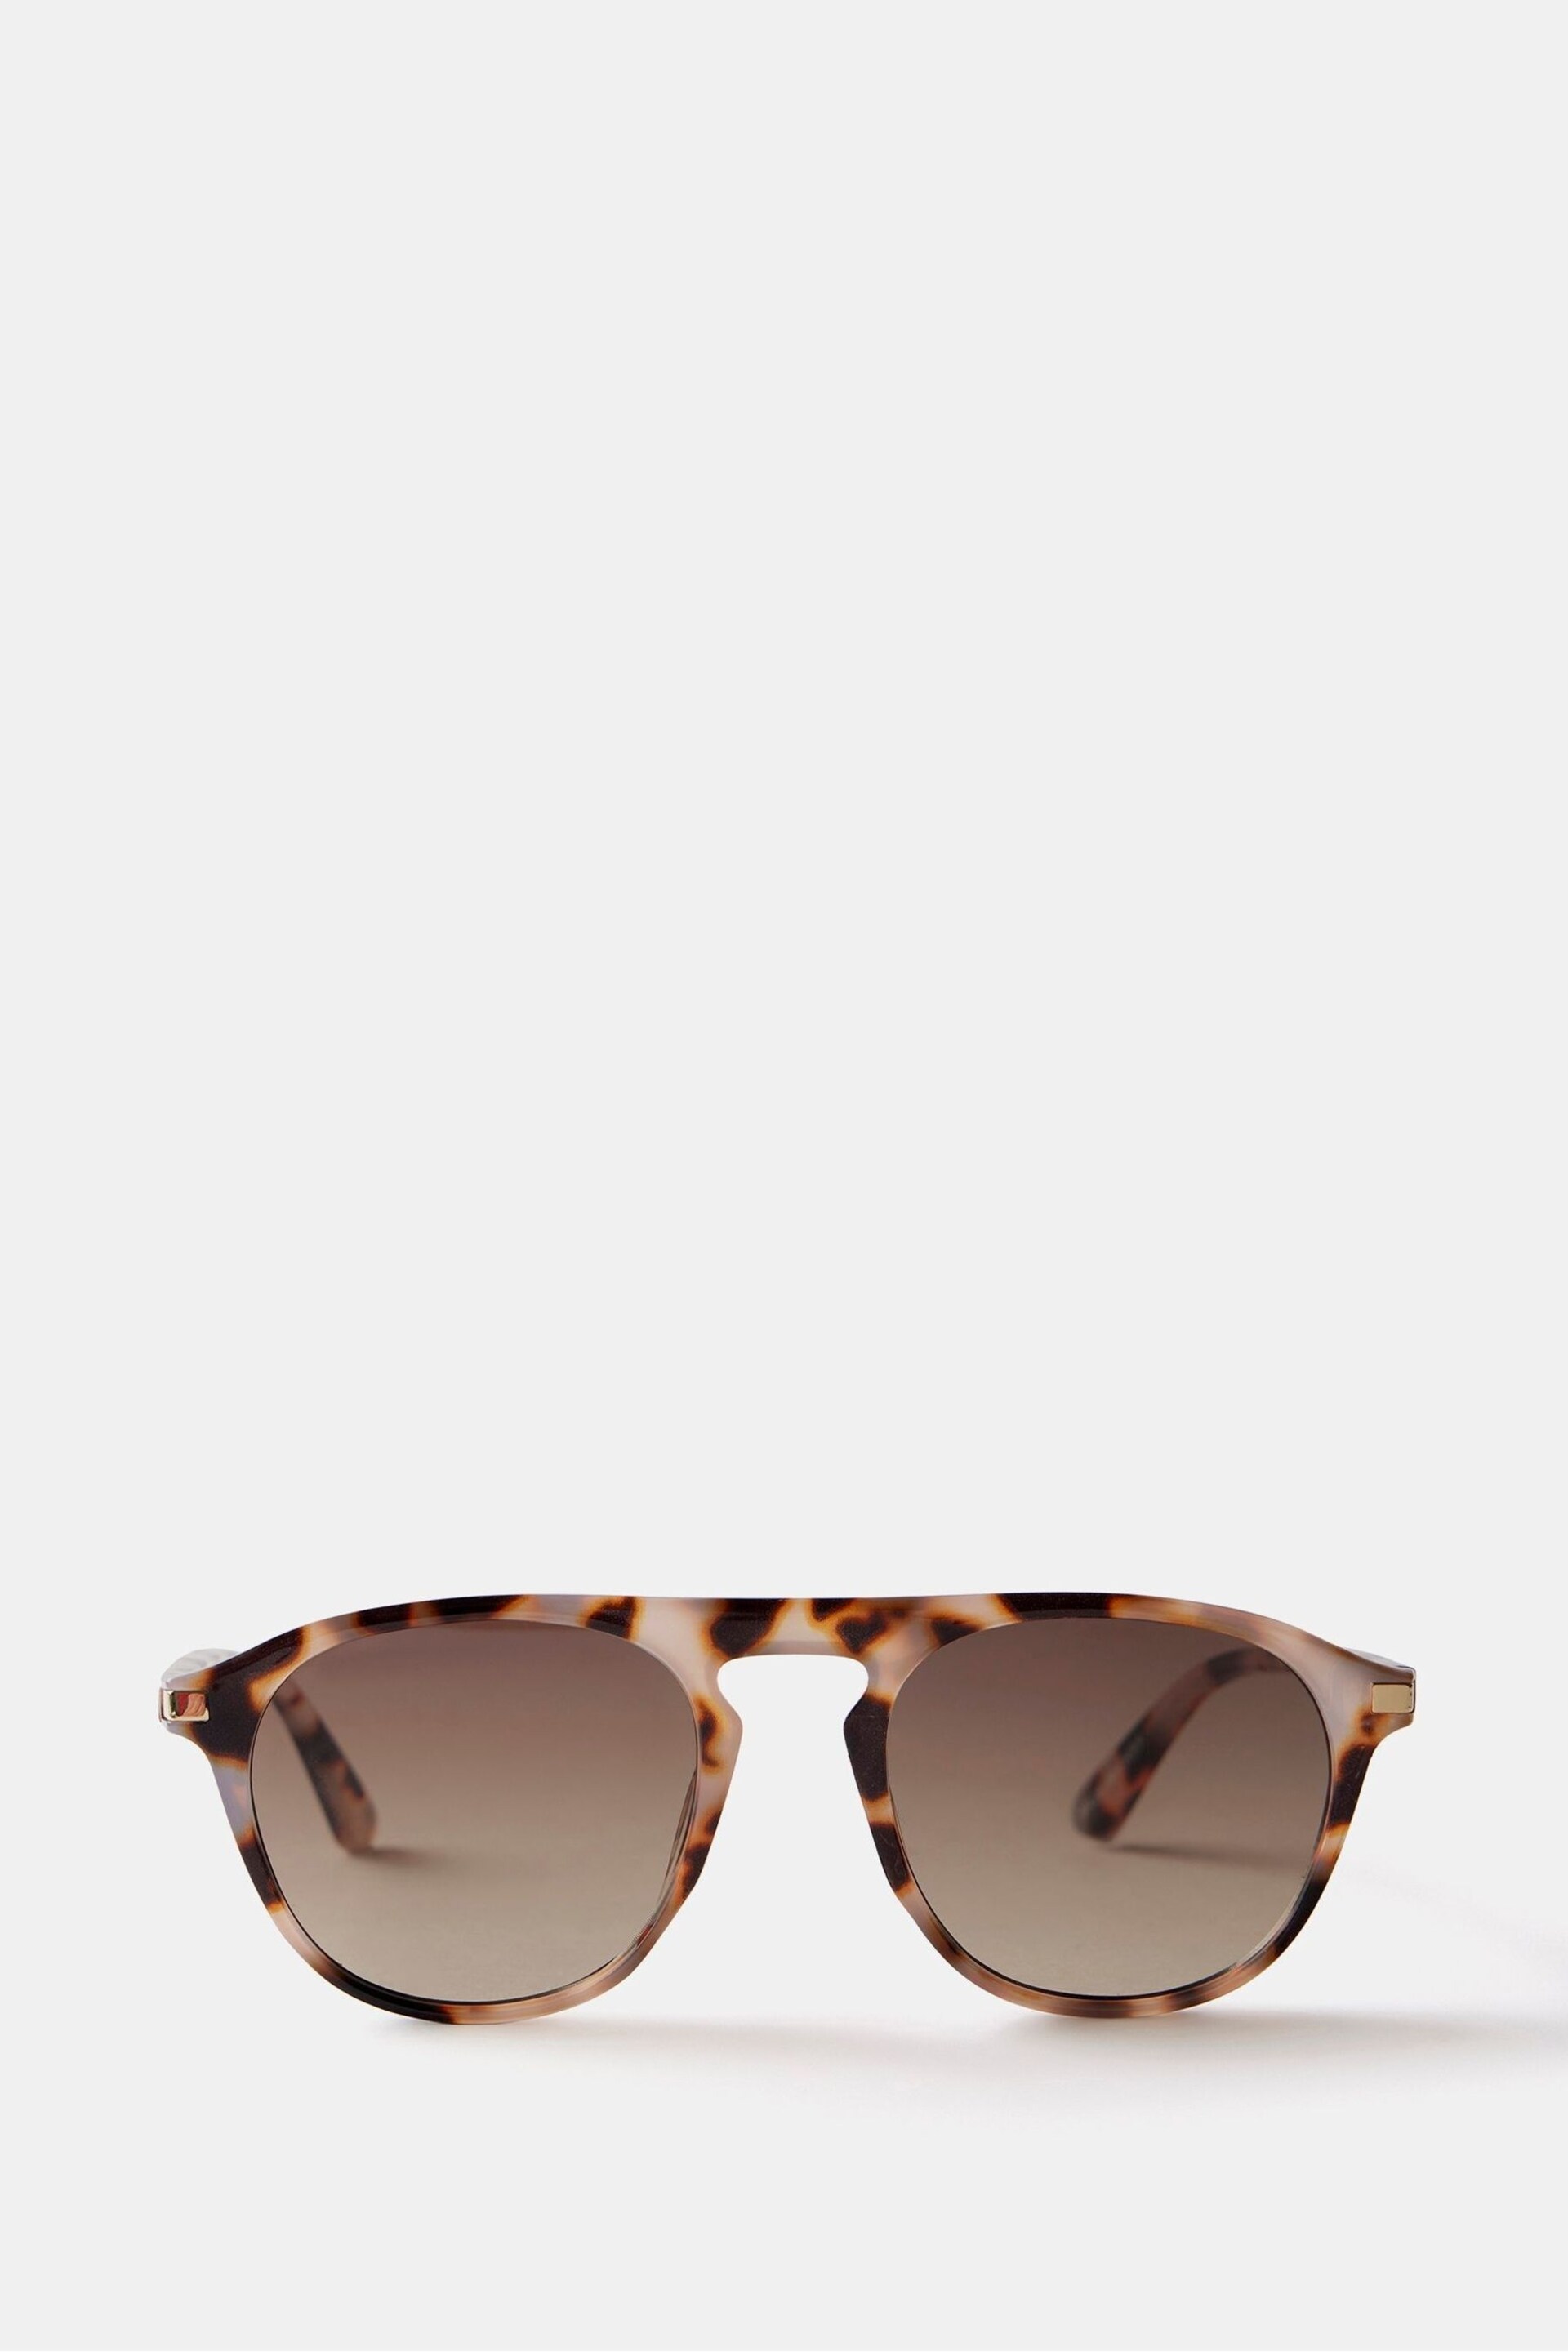 Mint Velvet Brown Tortoiseshell Sunglasses - Image 2 of 6